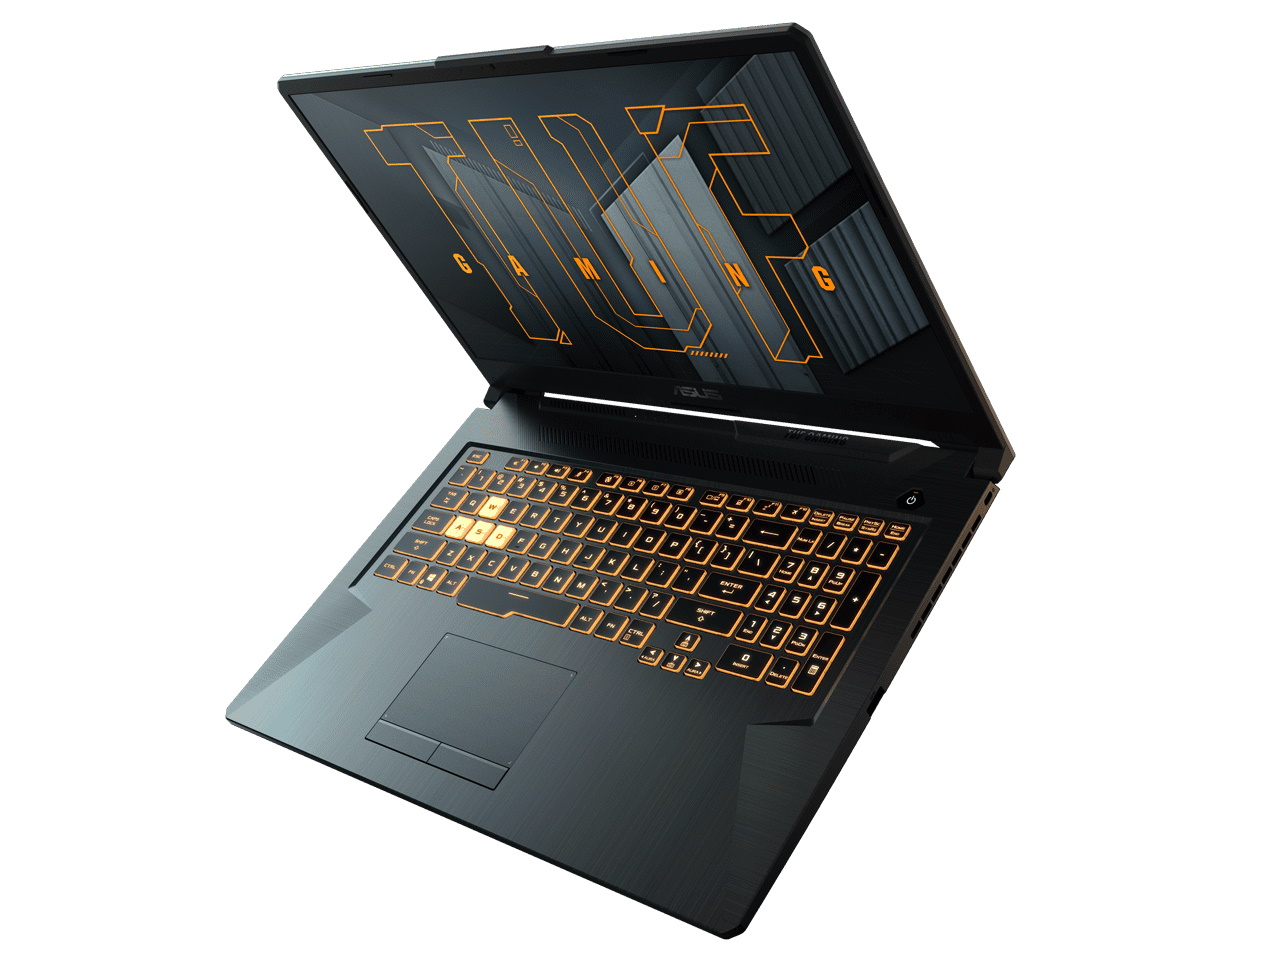 Asus TUF Gaming F17 im Laptop-Test: Guter Gamer mit RTX 3060 aber  durchschnittlichem Display trotz 144 Hz - Notebookcheck.com Tests